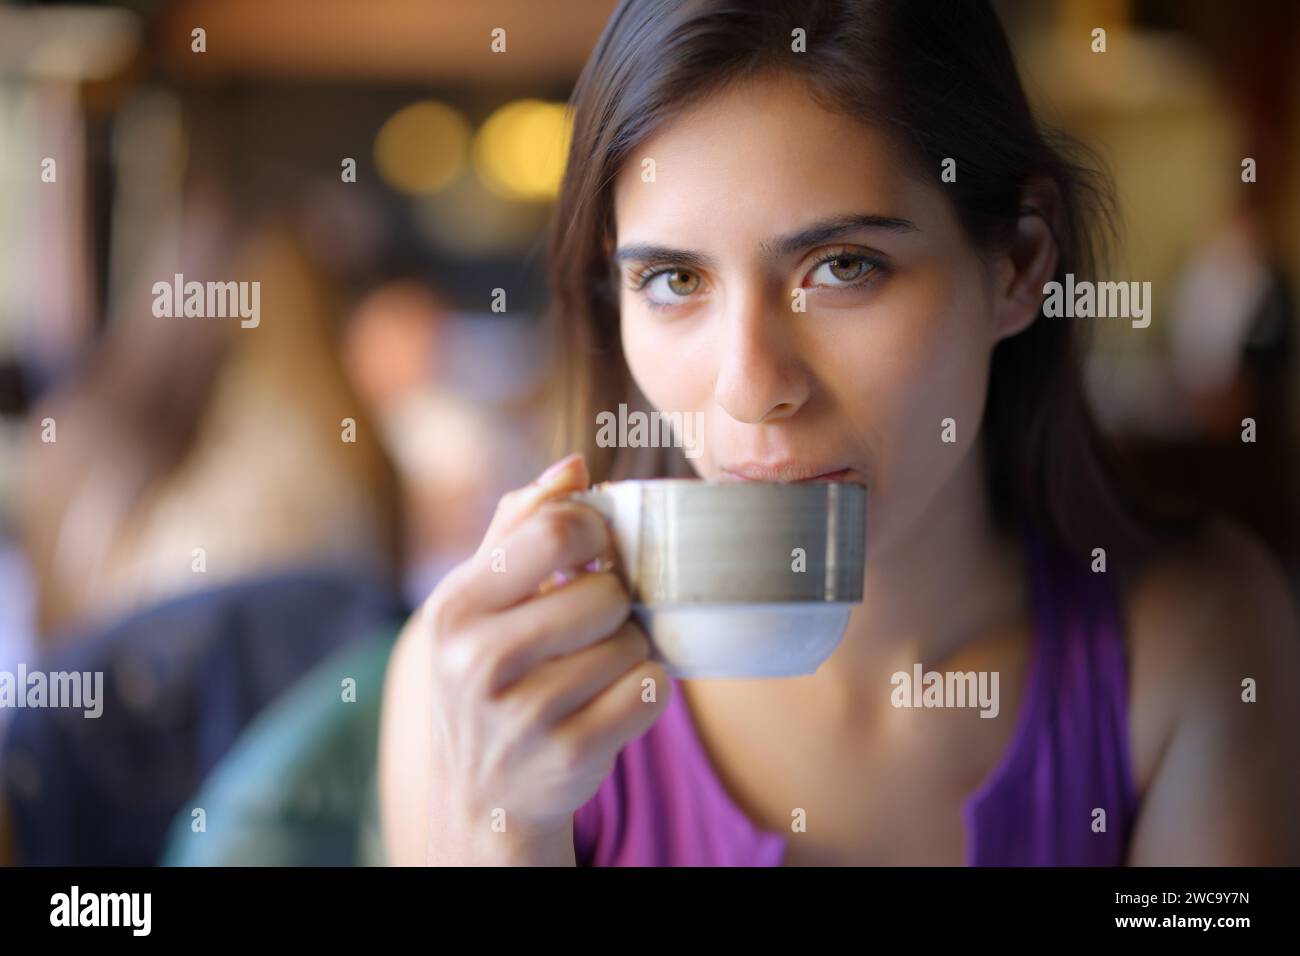 Hermosa mujer bebiendo café mirándote en una tienda Foto de stock